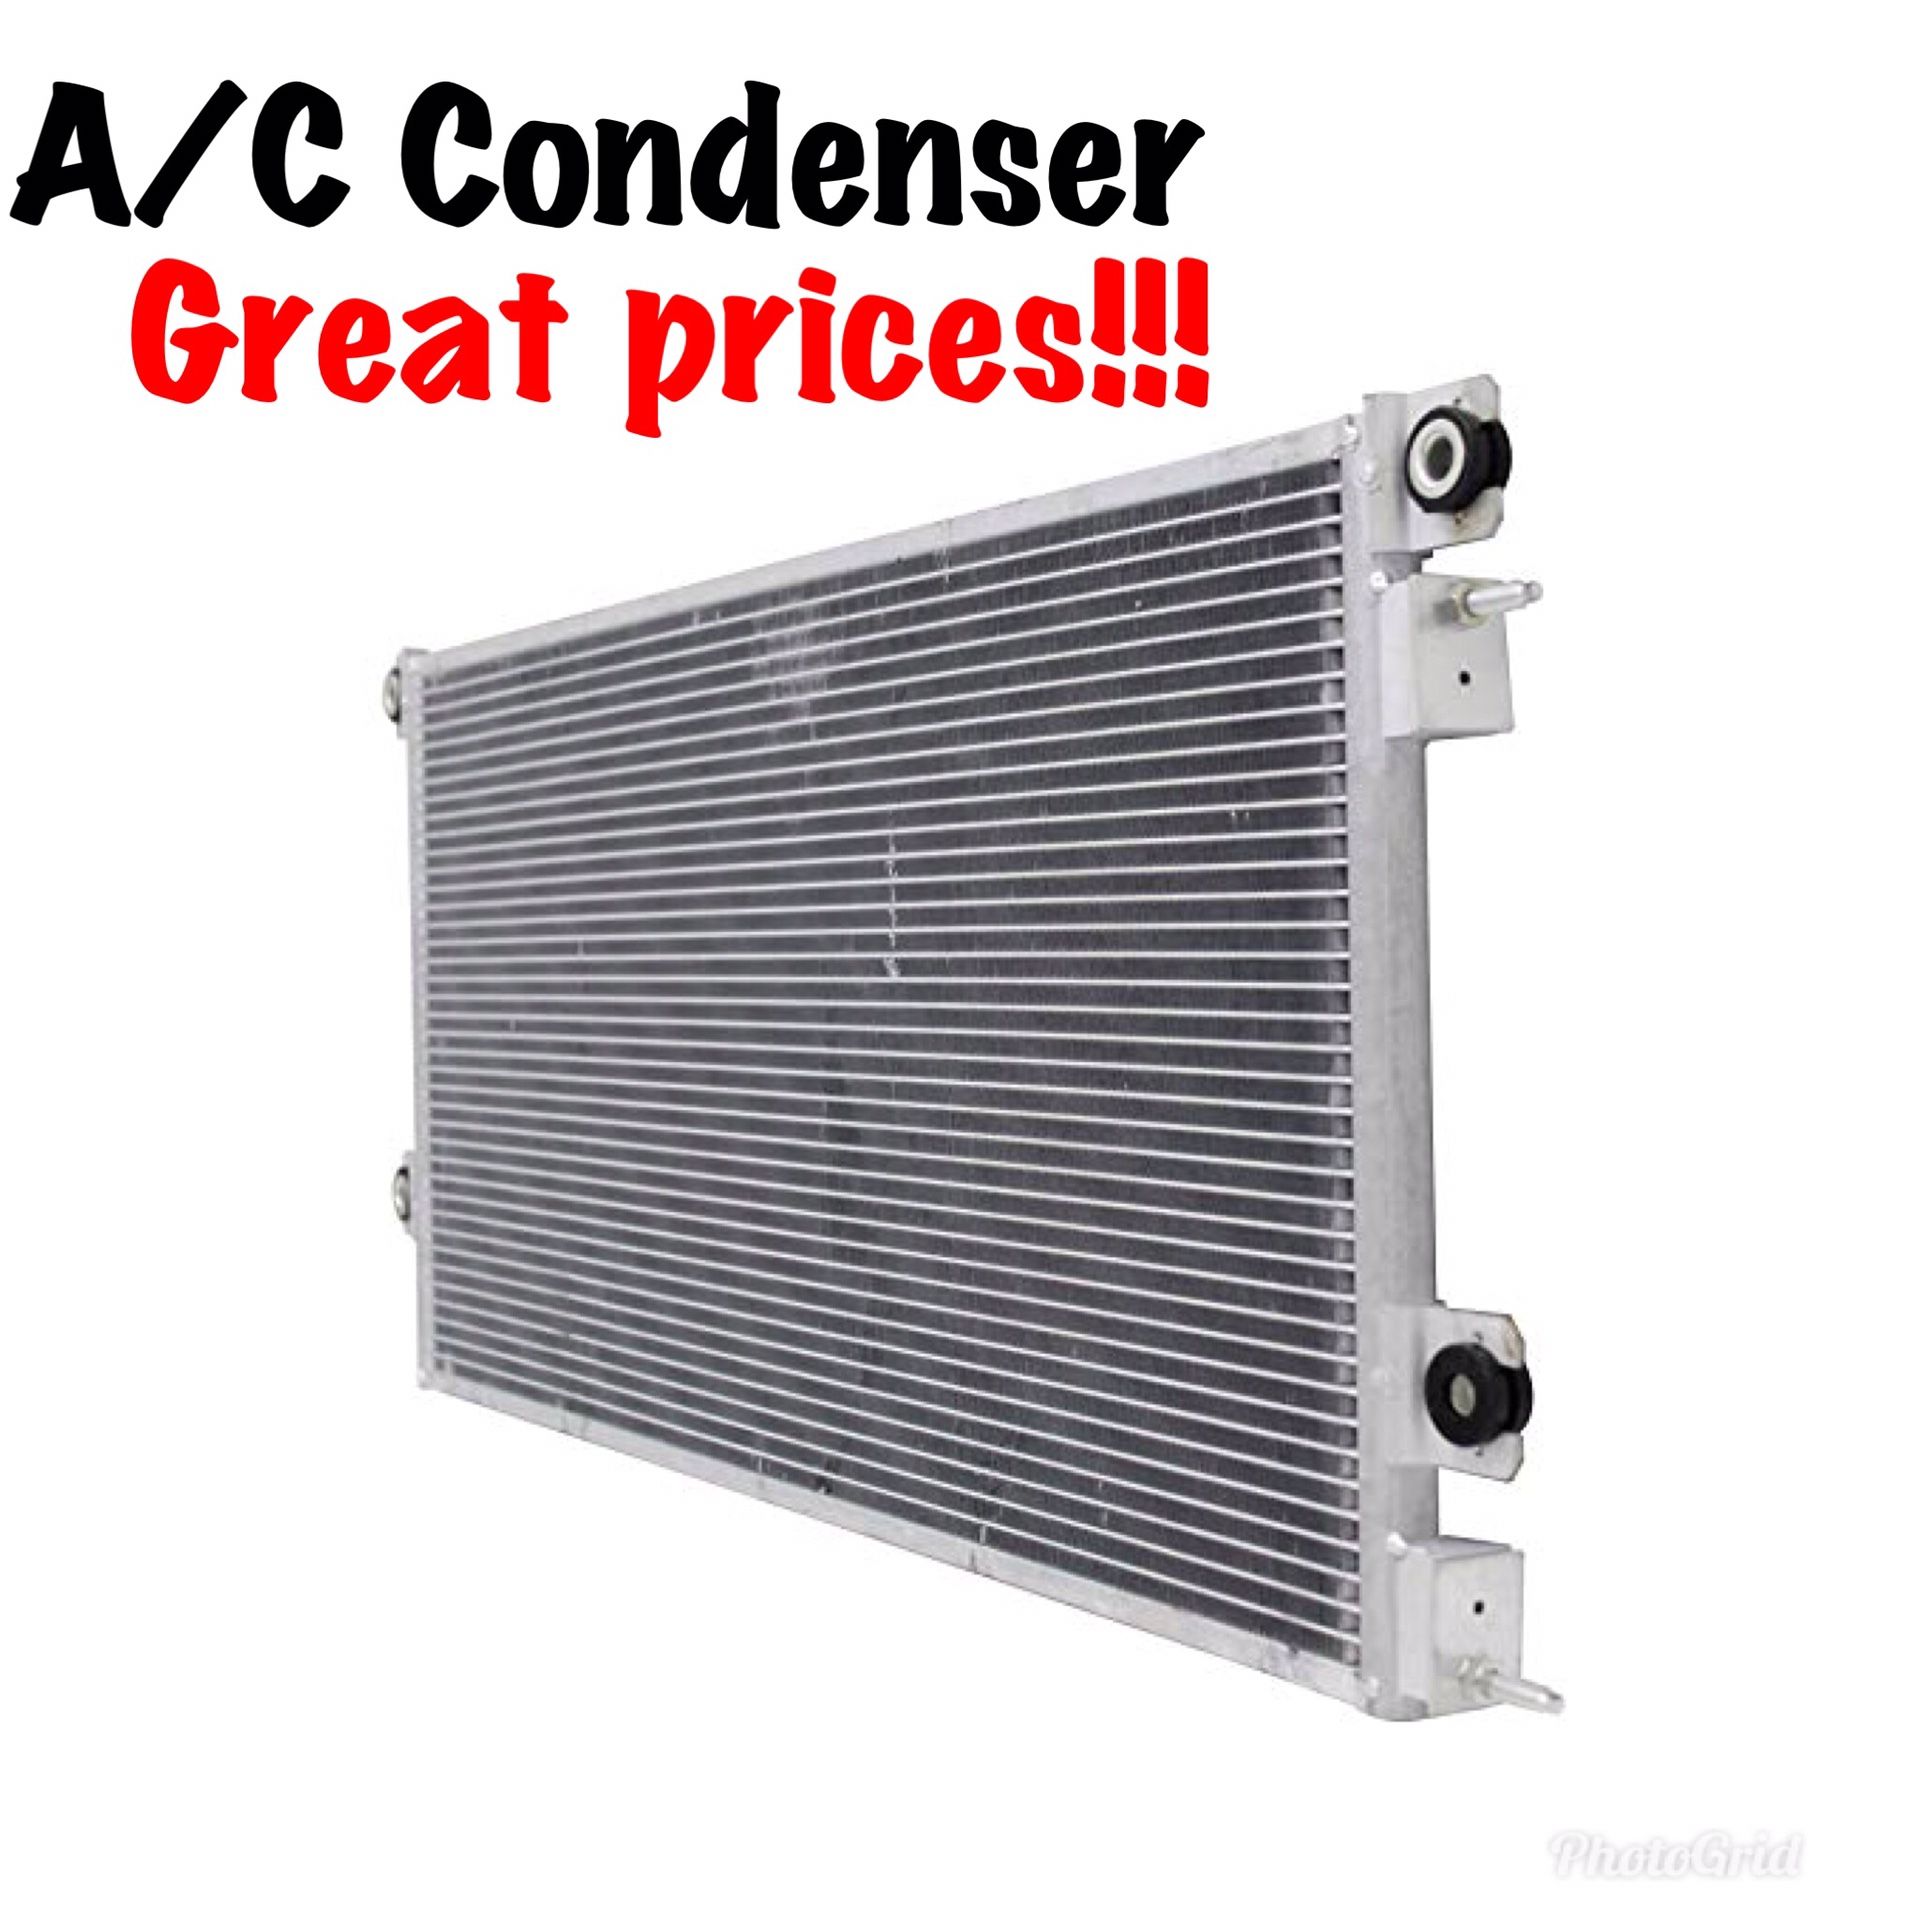 Ac condenser and evaporator